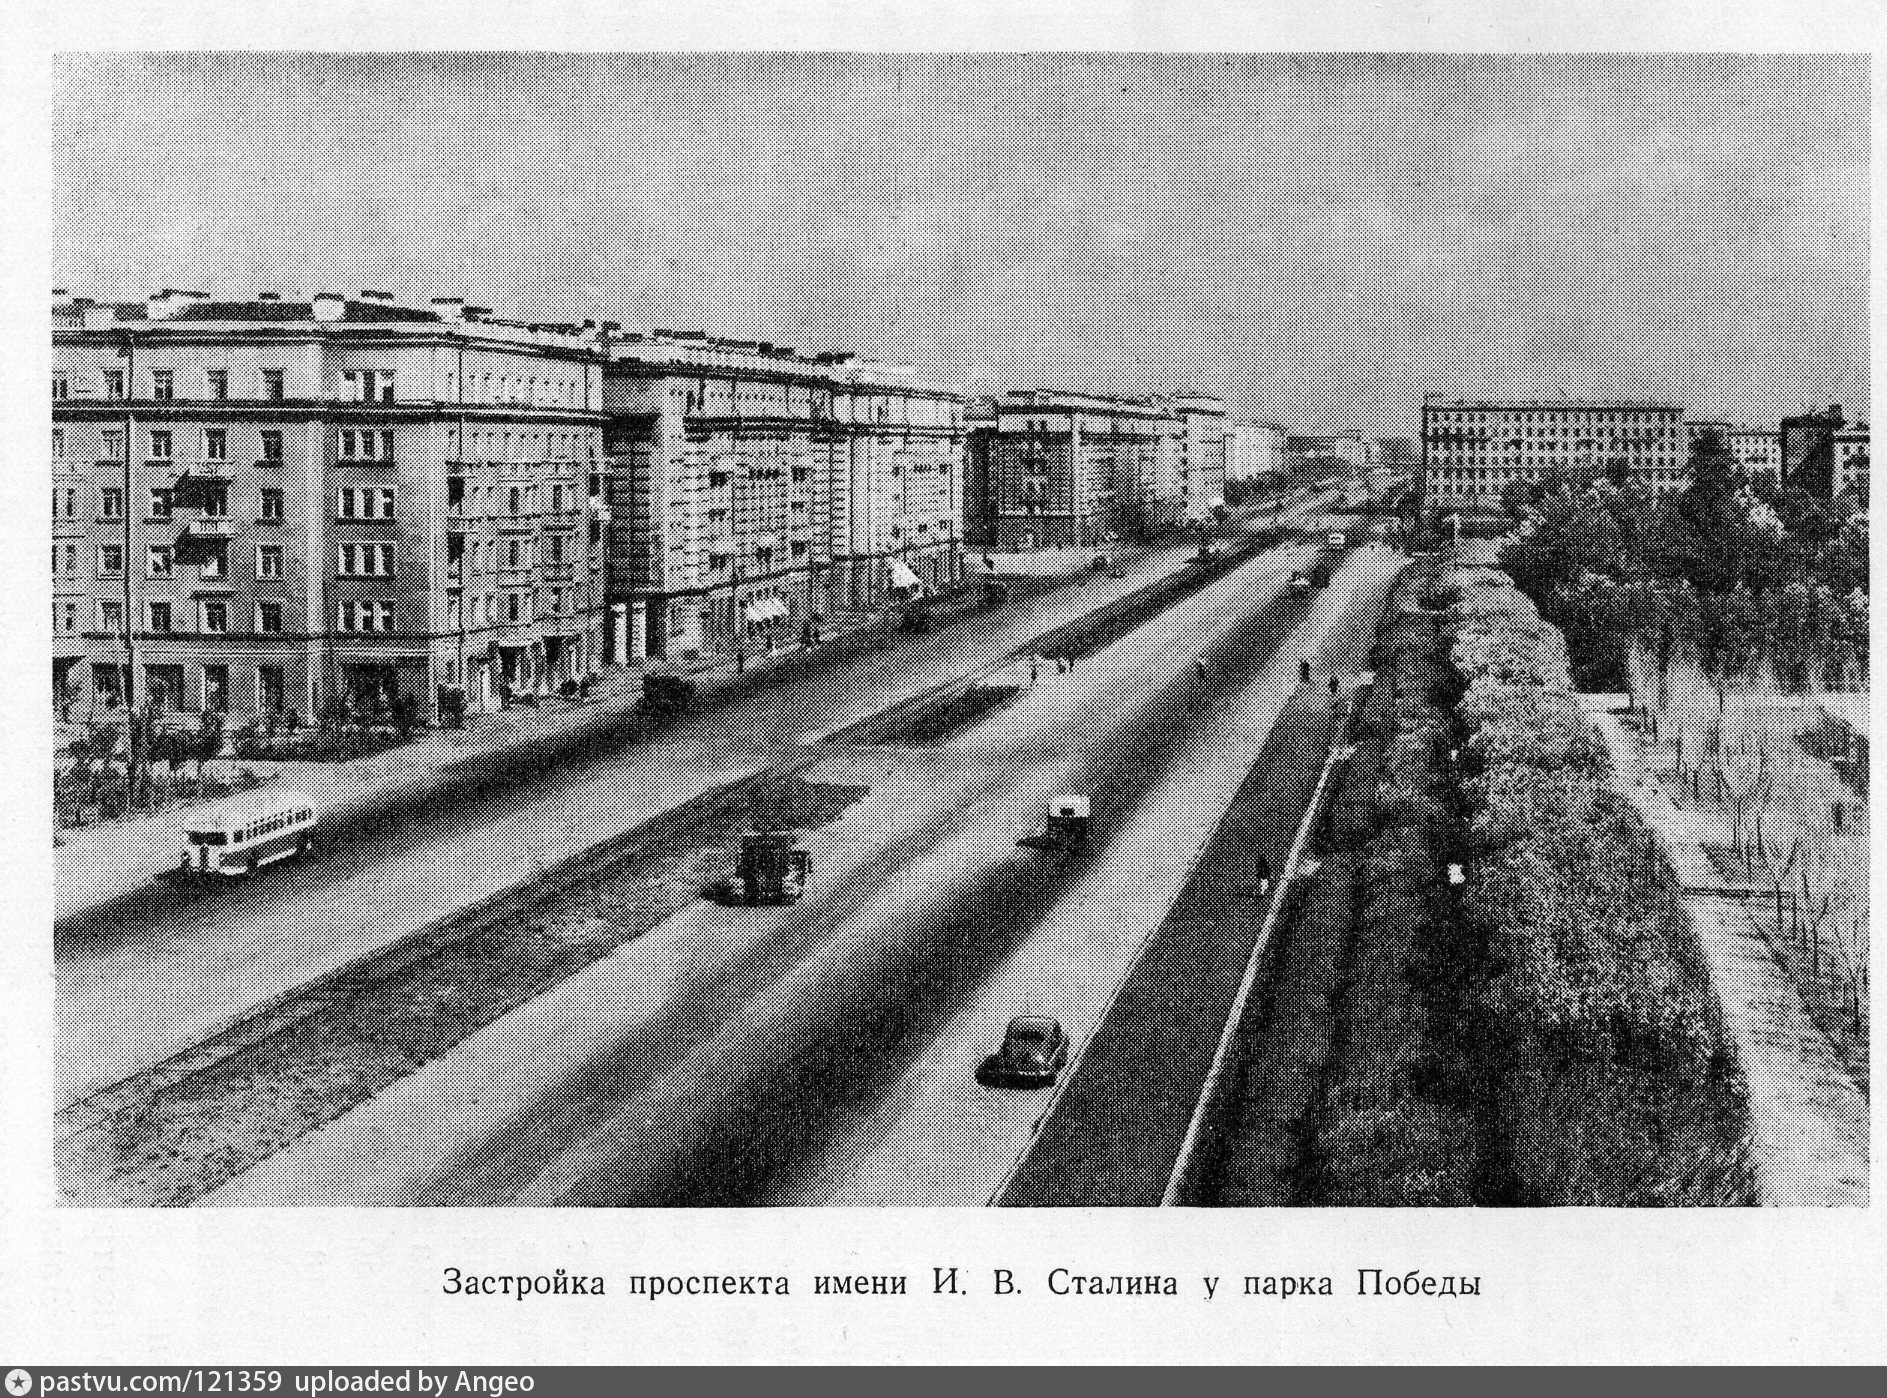 Проспект Сталина в Ленинграде